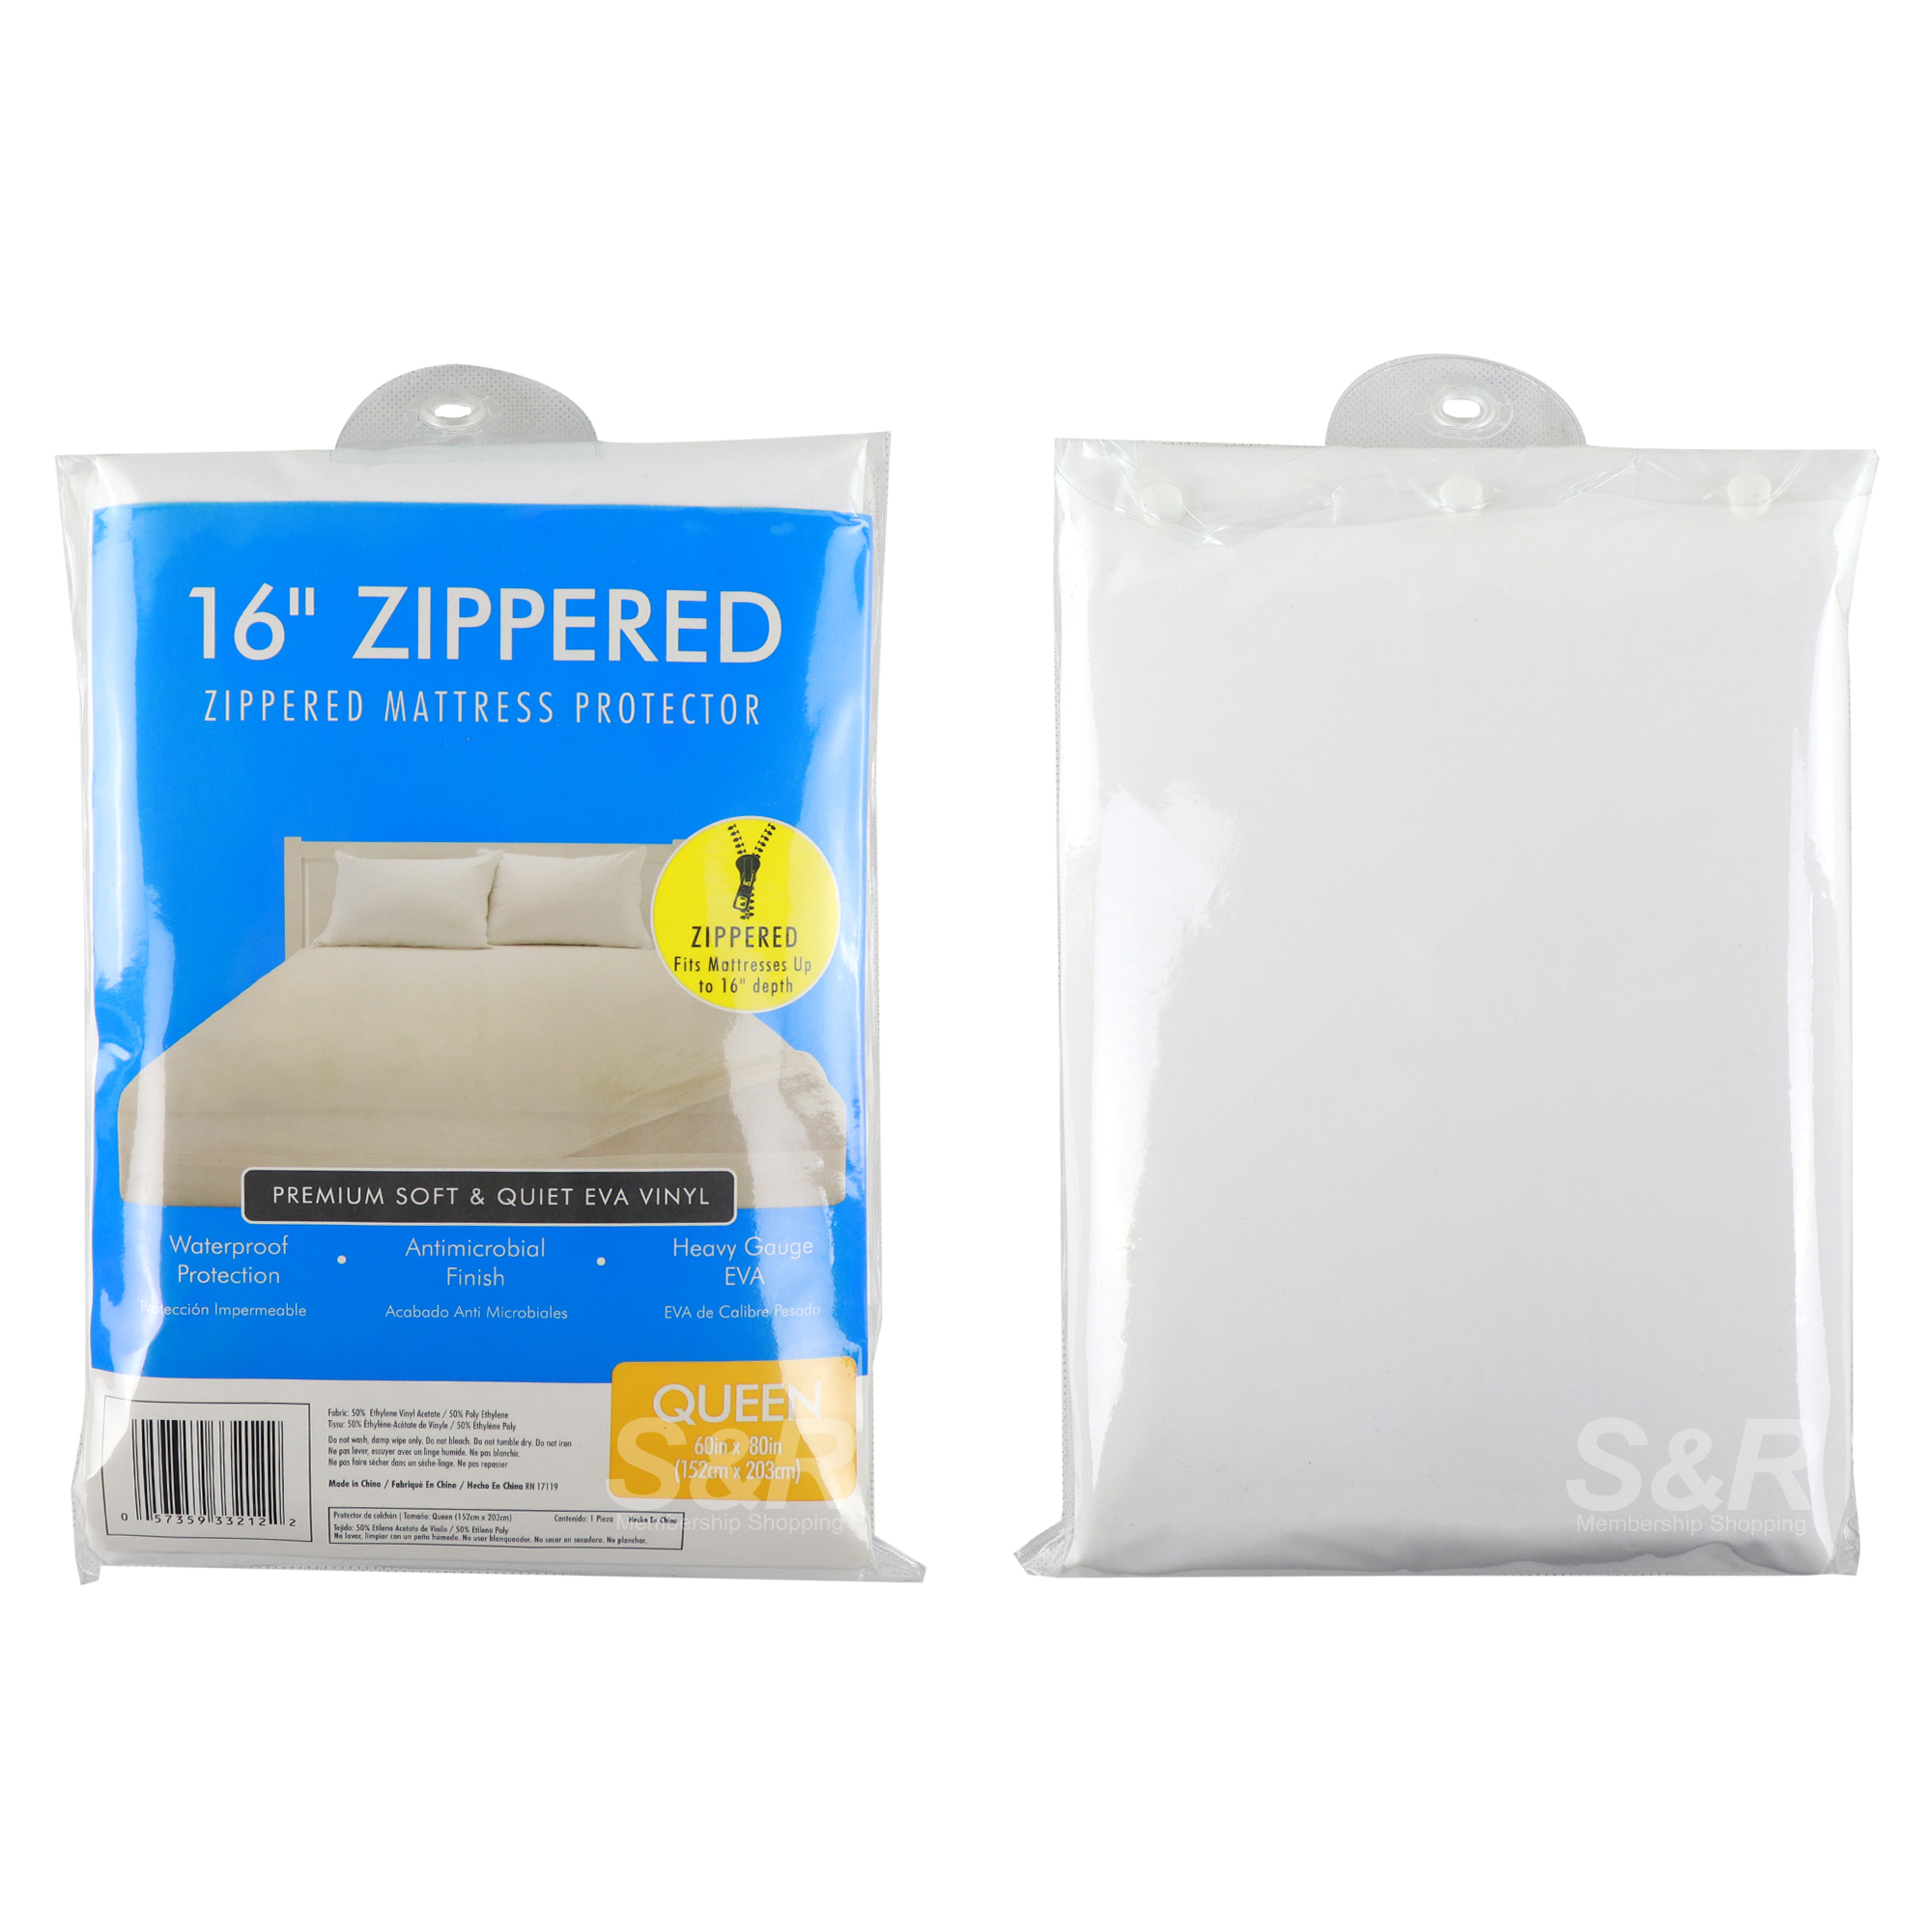 Zippered Mattress Protector